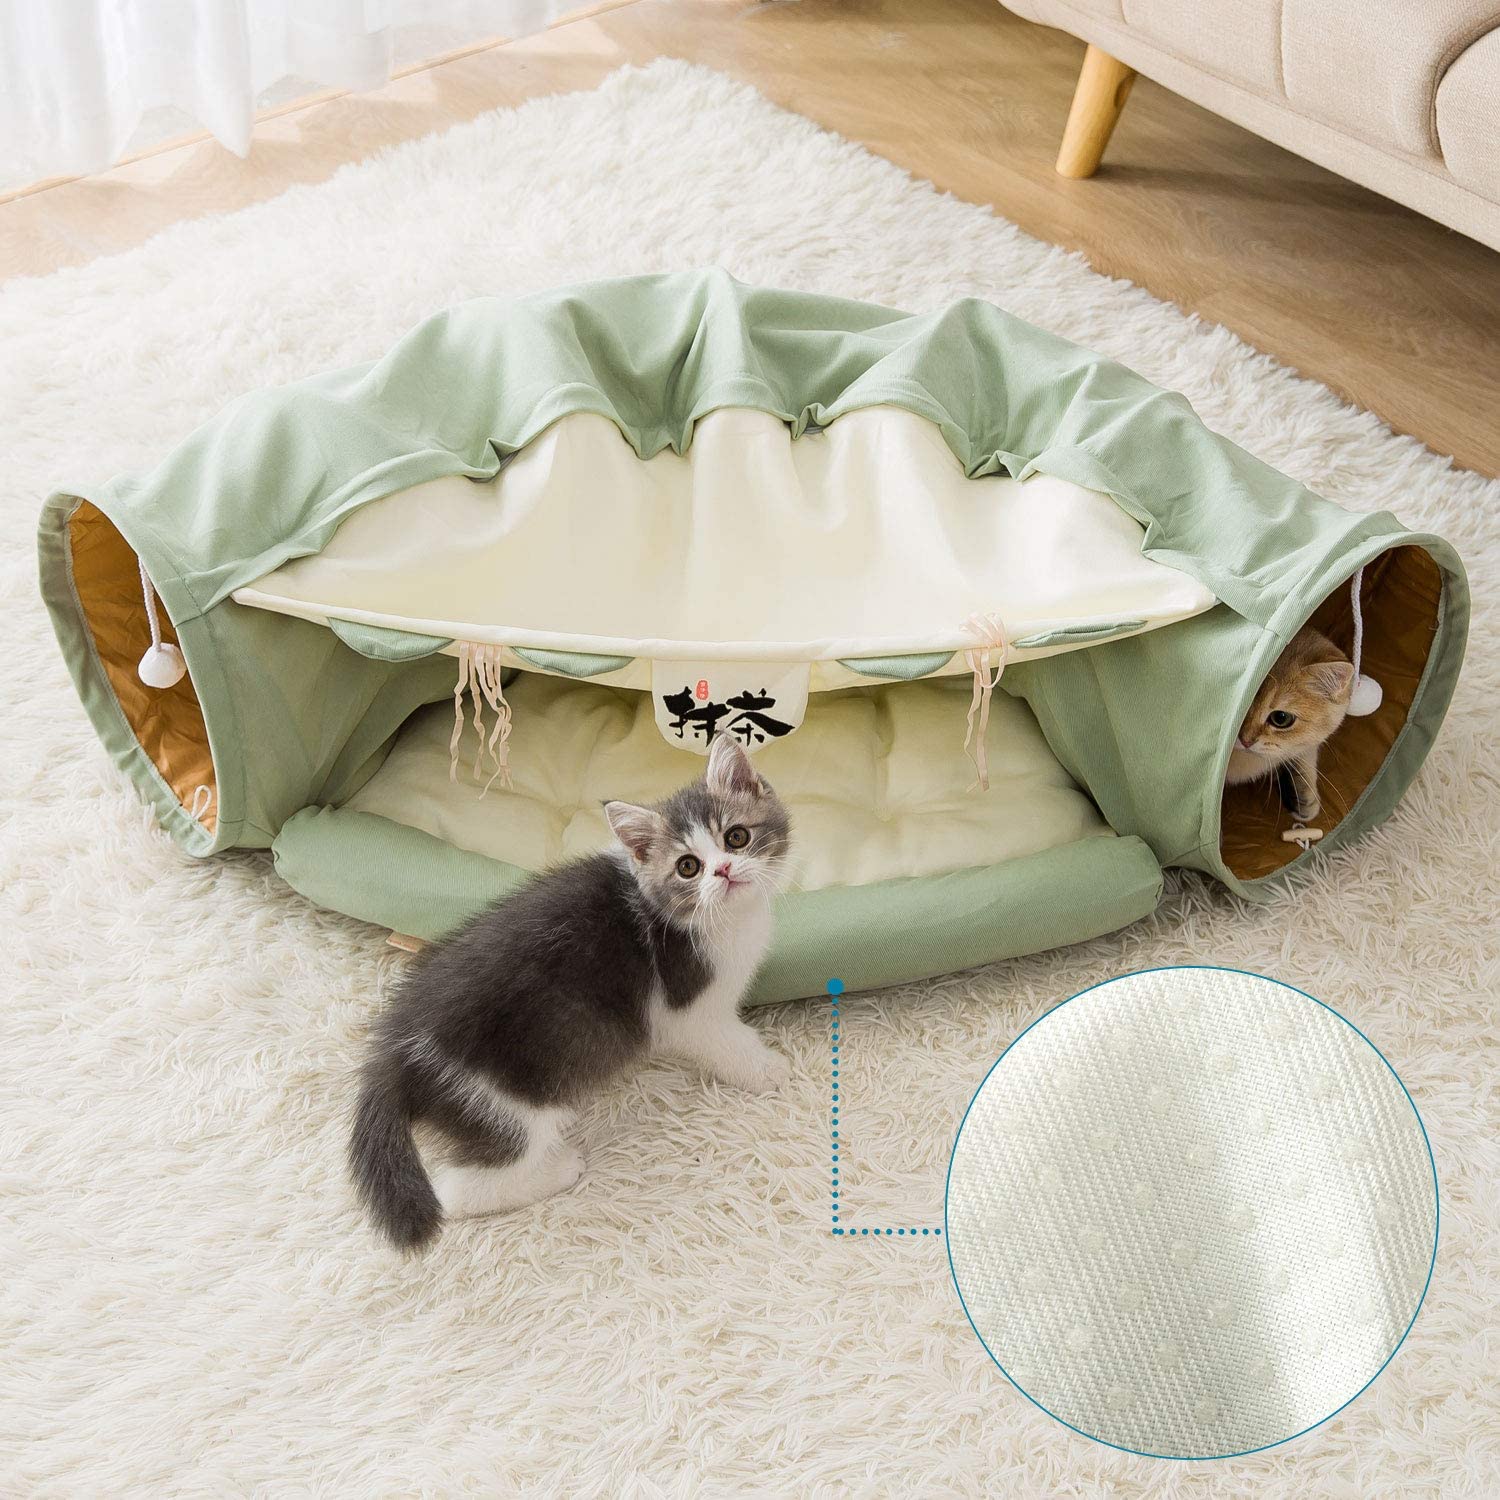  اسباب بازی های تونل گربه در ورودی تونل یا توپ های روی پرده لانه گربه با لذت کوچک بازی گربه در زمان های معمولی روبرو می شوند